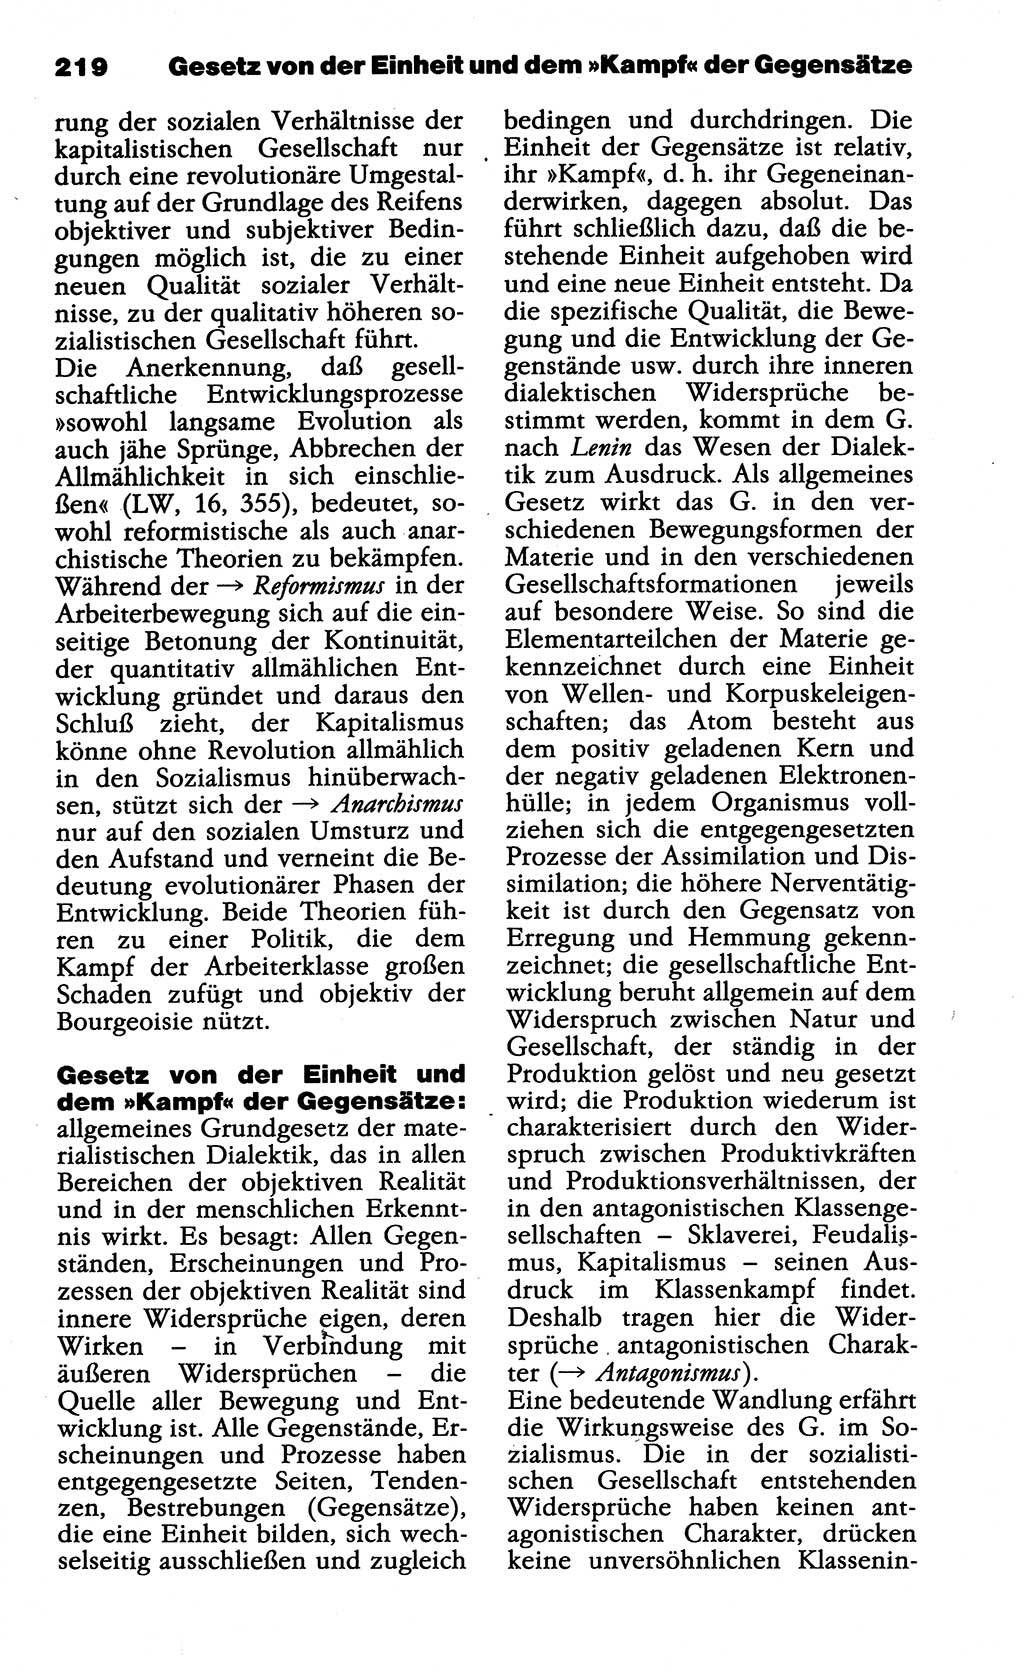 Wörterbuch der marxistisch-leninistischen Philosophie [Deutsche Demokratische Republik (DDR)] 1985, Seite 219 (Wb. ML Phil. DDR 1985, S. 219)